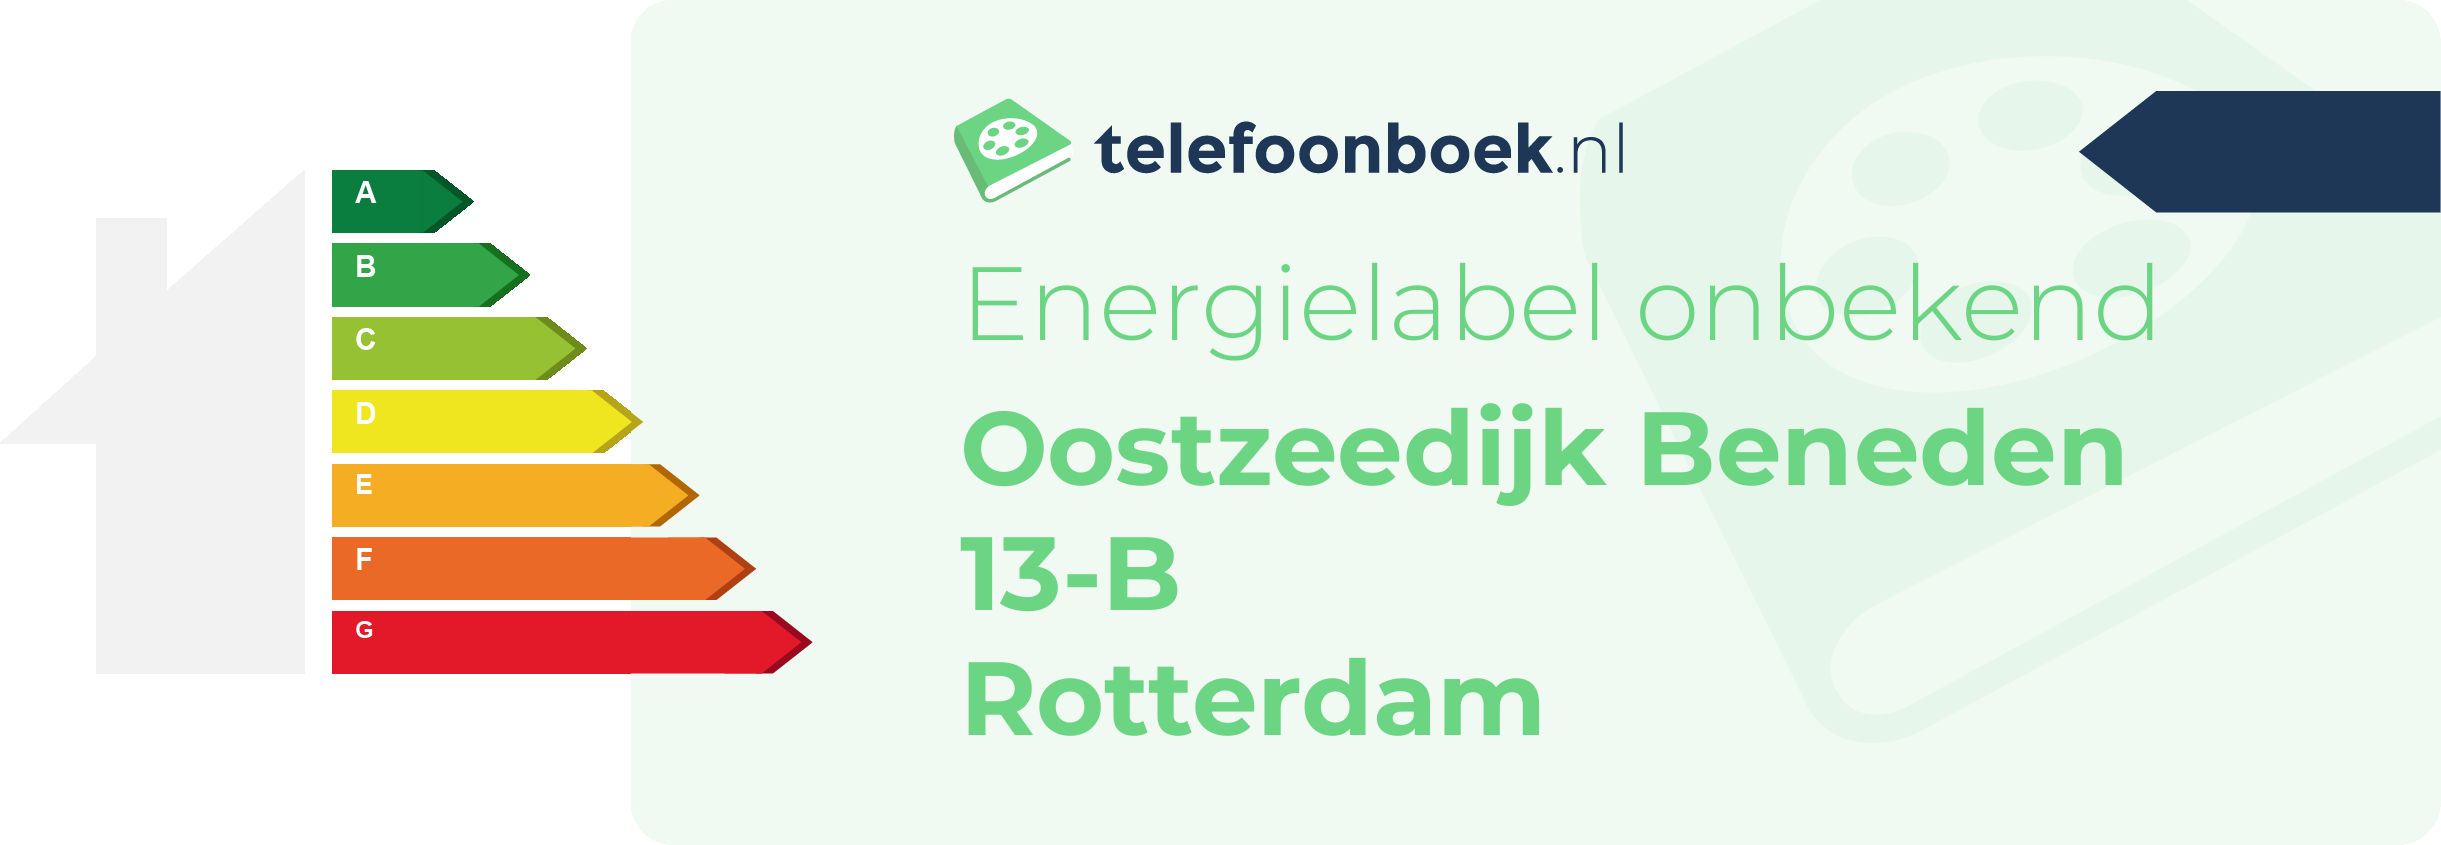 Energielabel Oostzeedijk Beneden 13-B Rotterdam